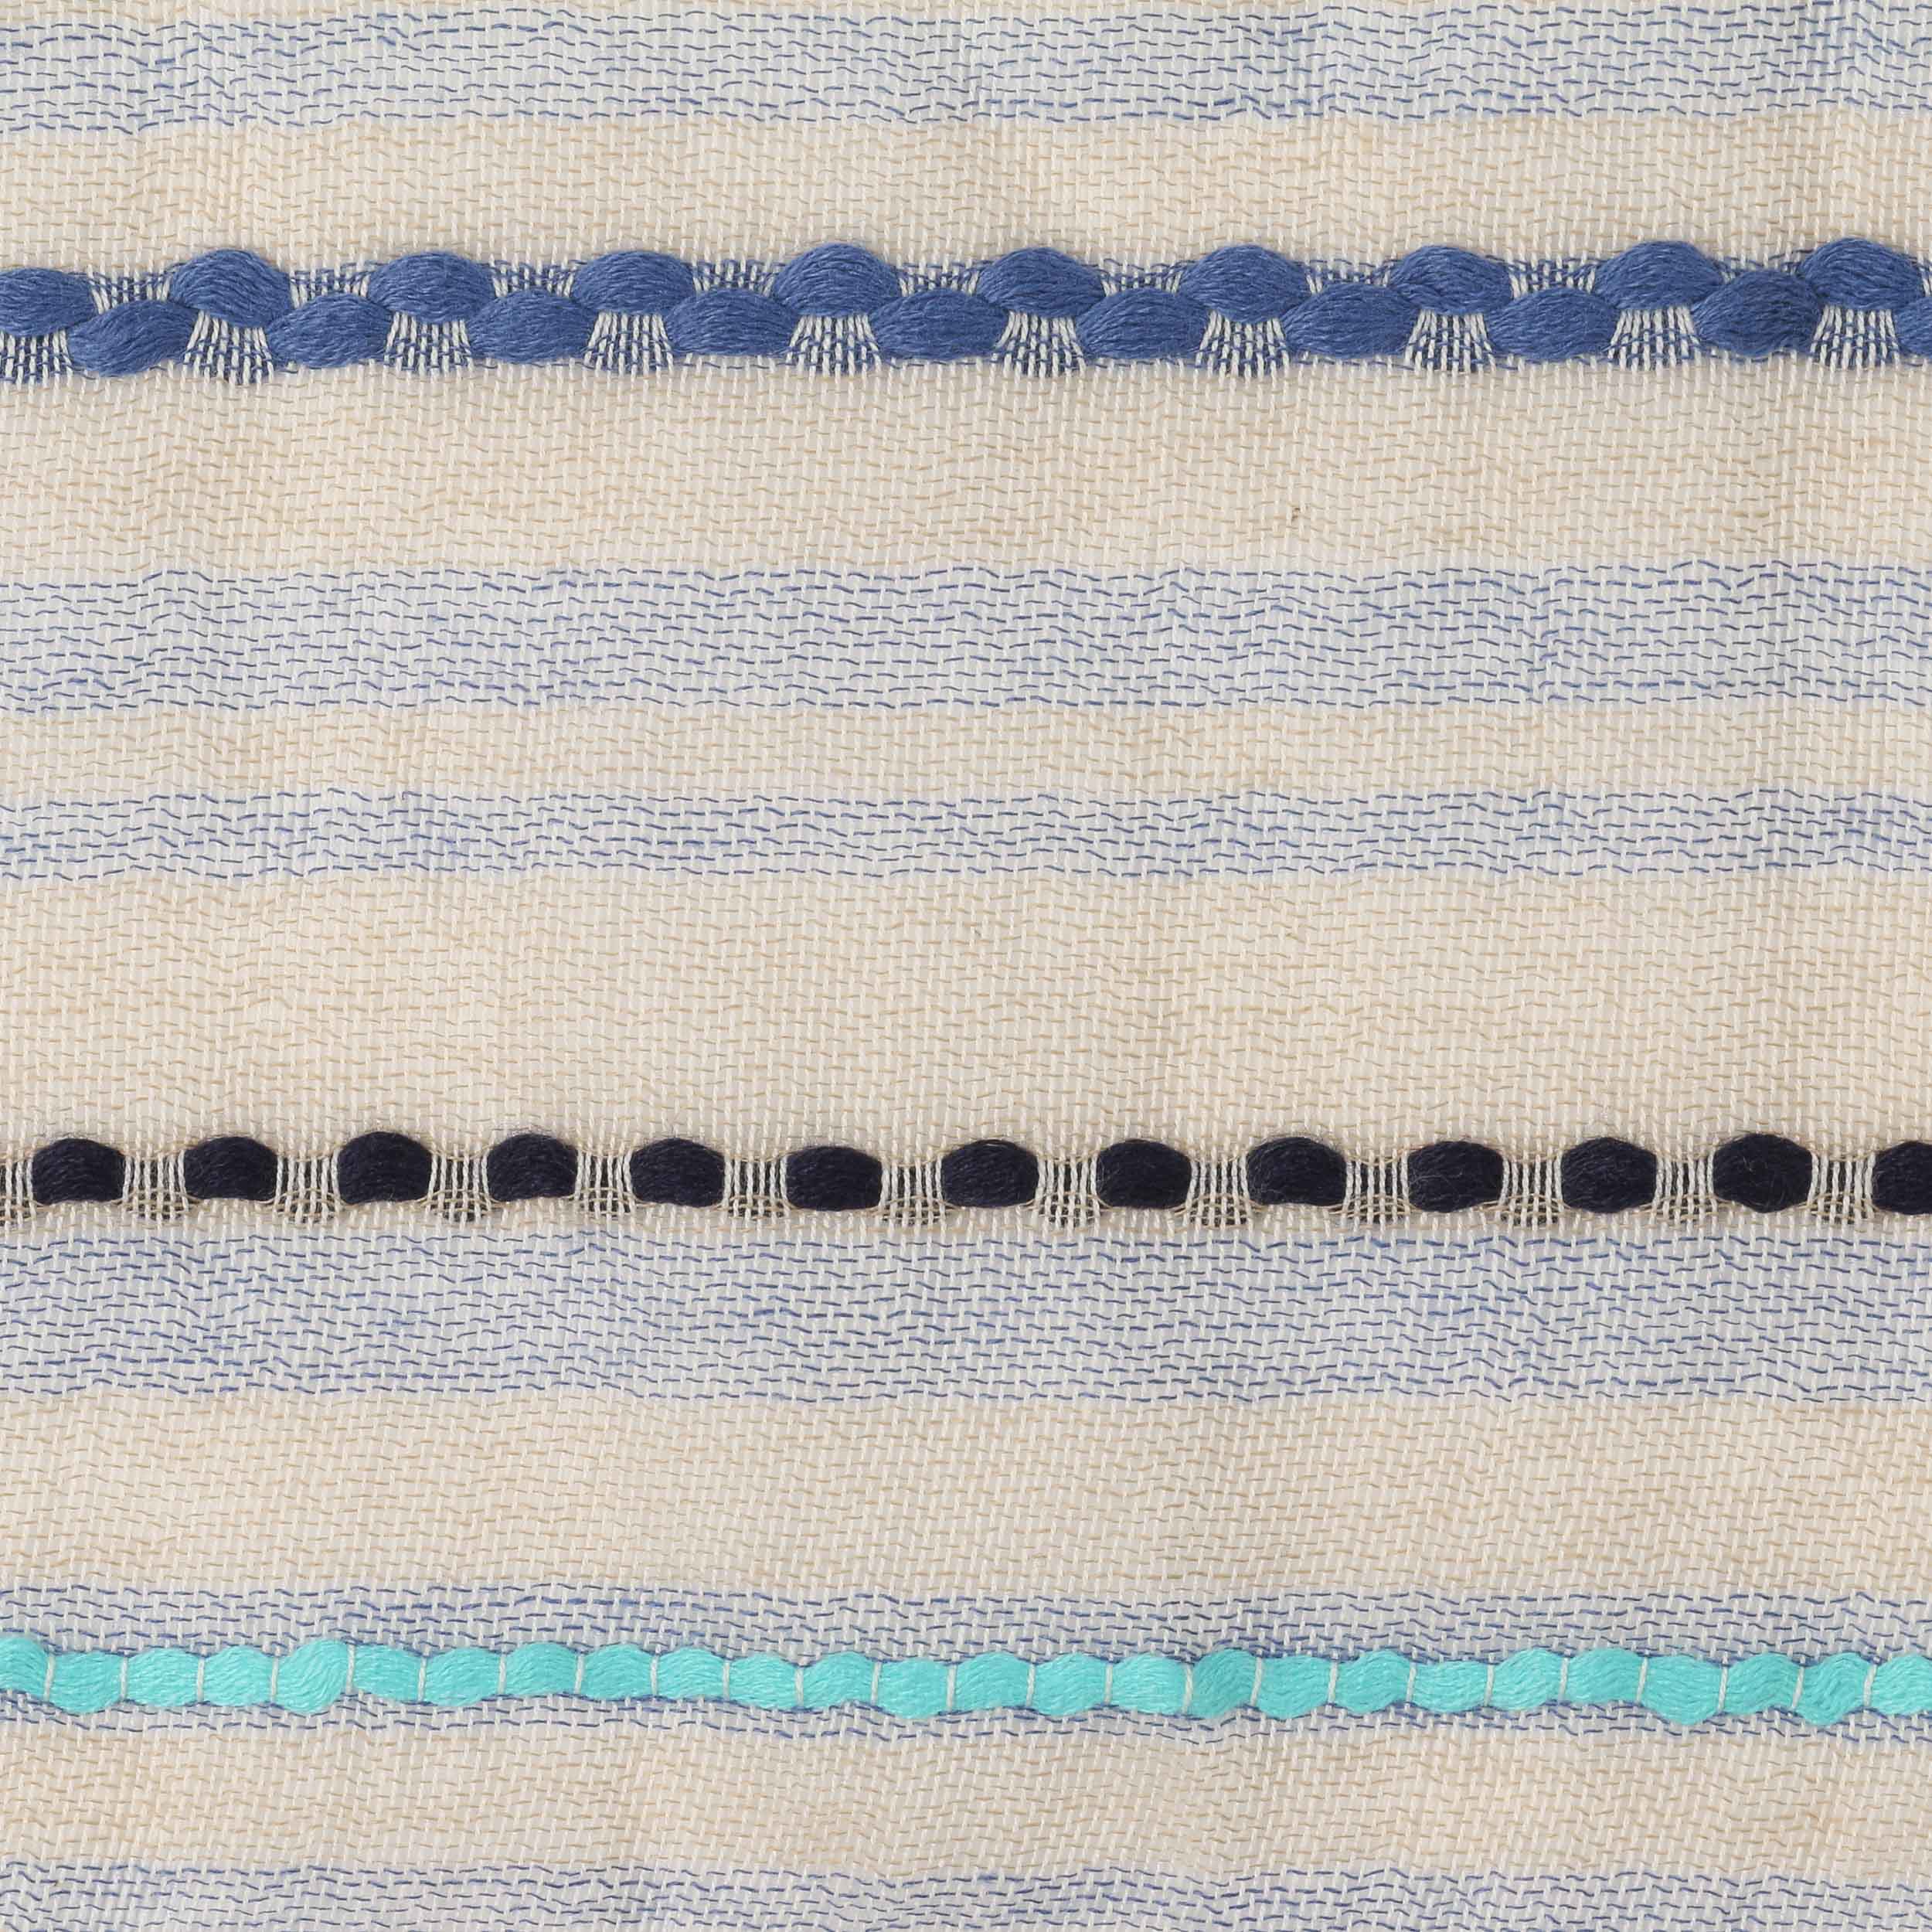 Sciarpa rigata color sabbia in puro cotone - Colombo Milano 1911